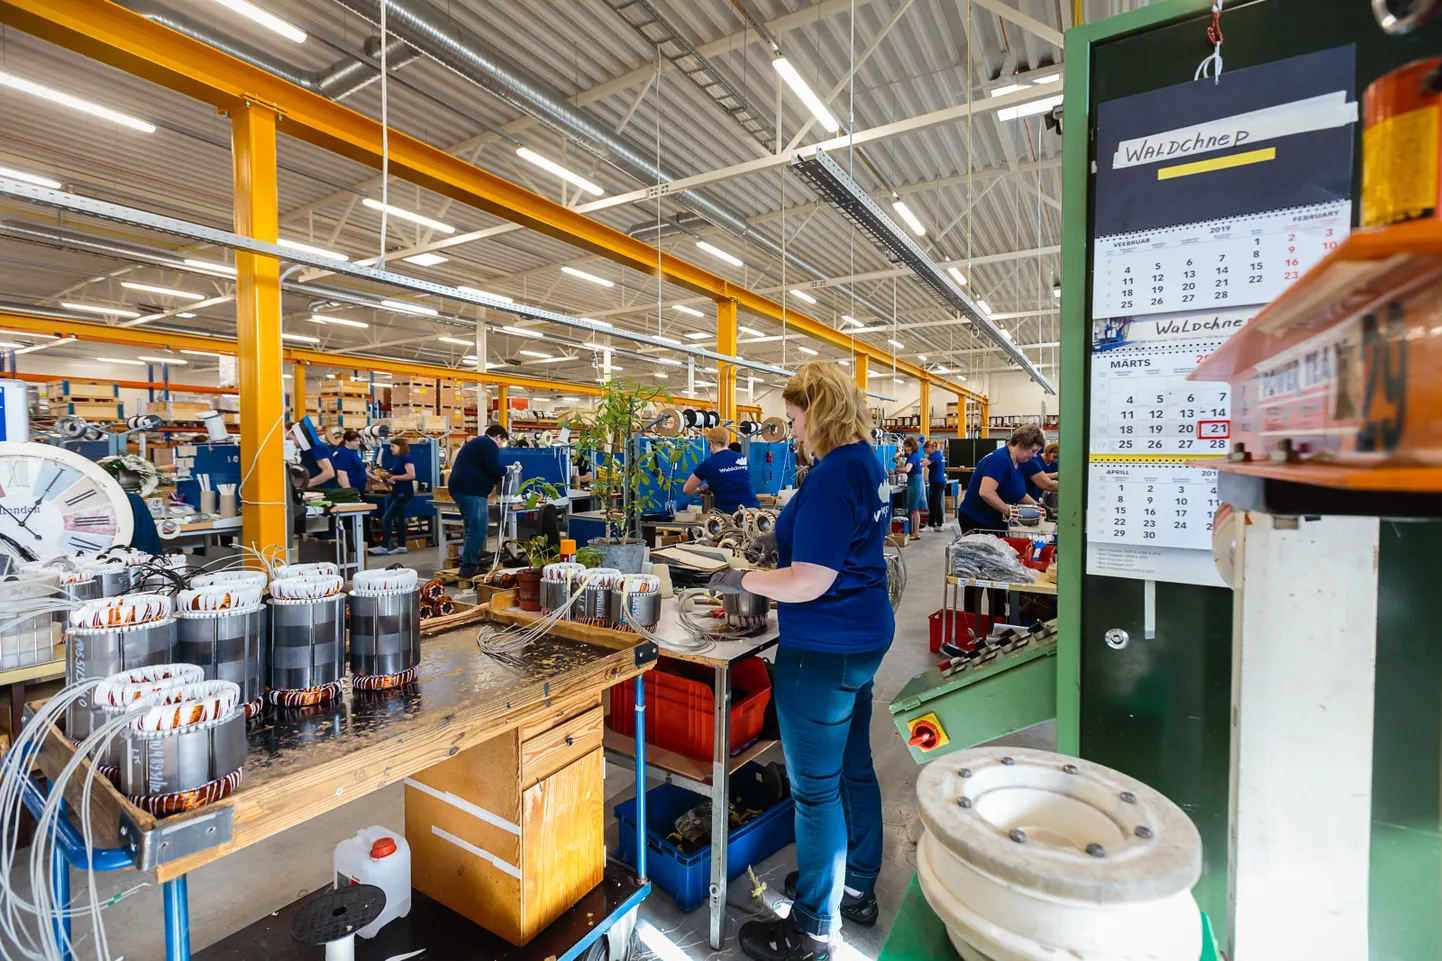 Производство электромоторов на заводе "Waldchnep" в Нарвском промышленном парке.